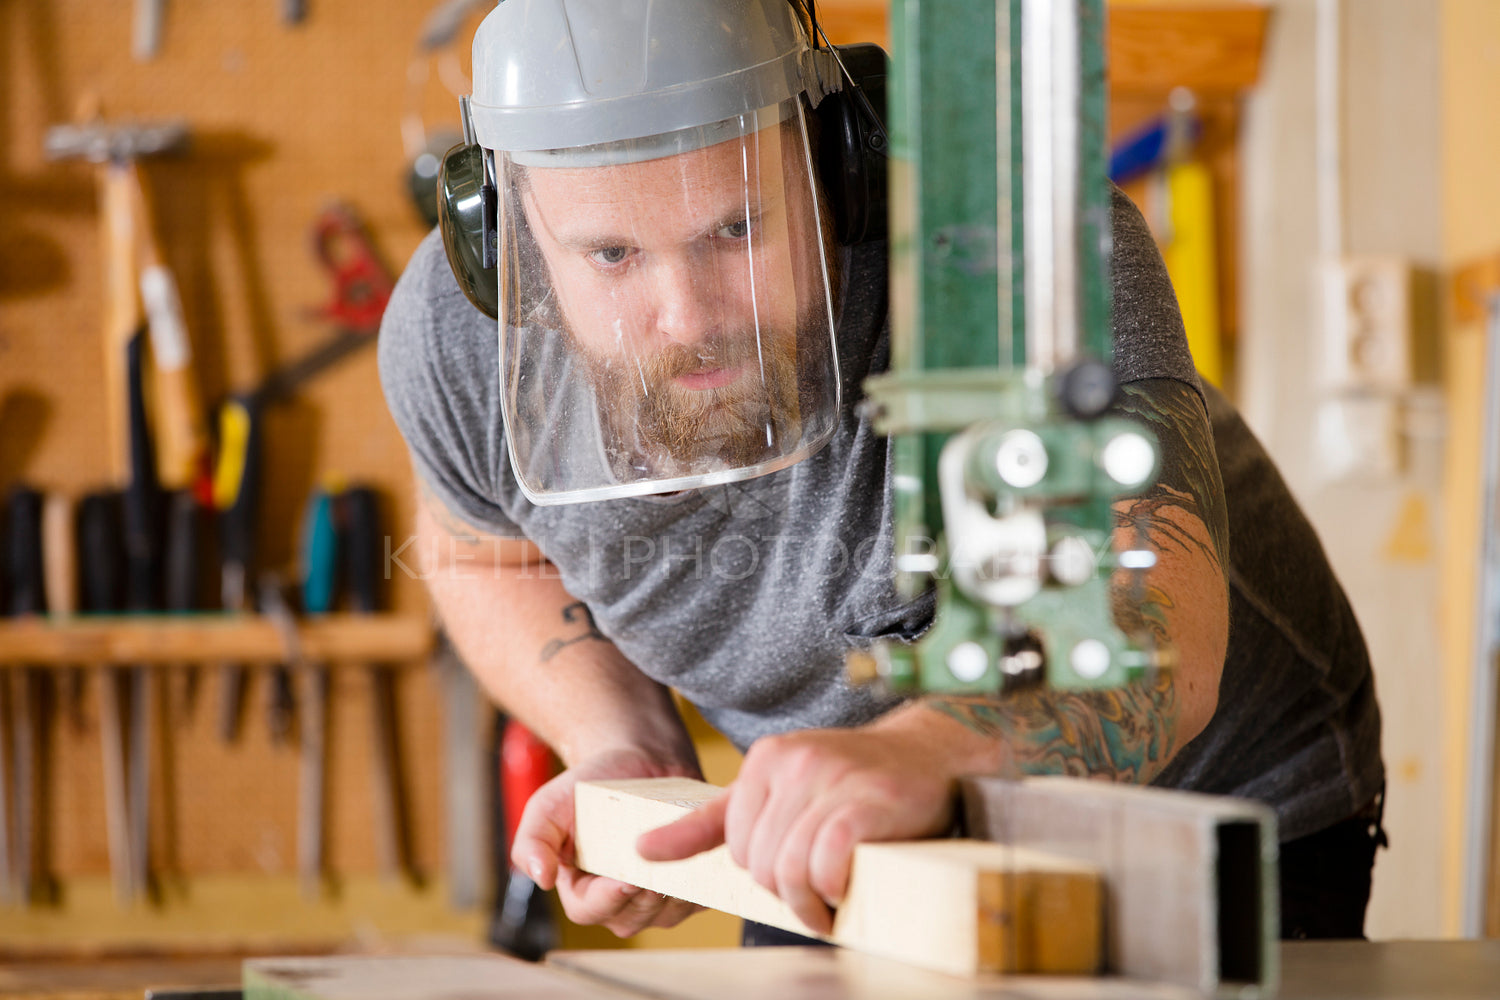 Craftsman with safety mask visor handles band saw in workshop